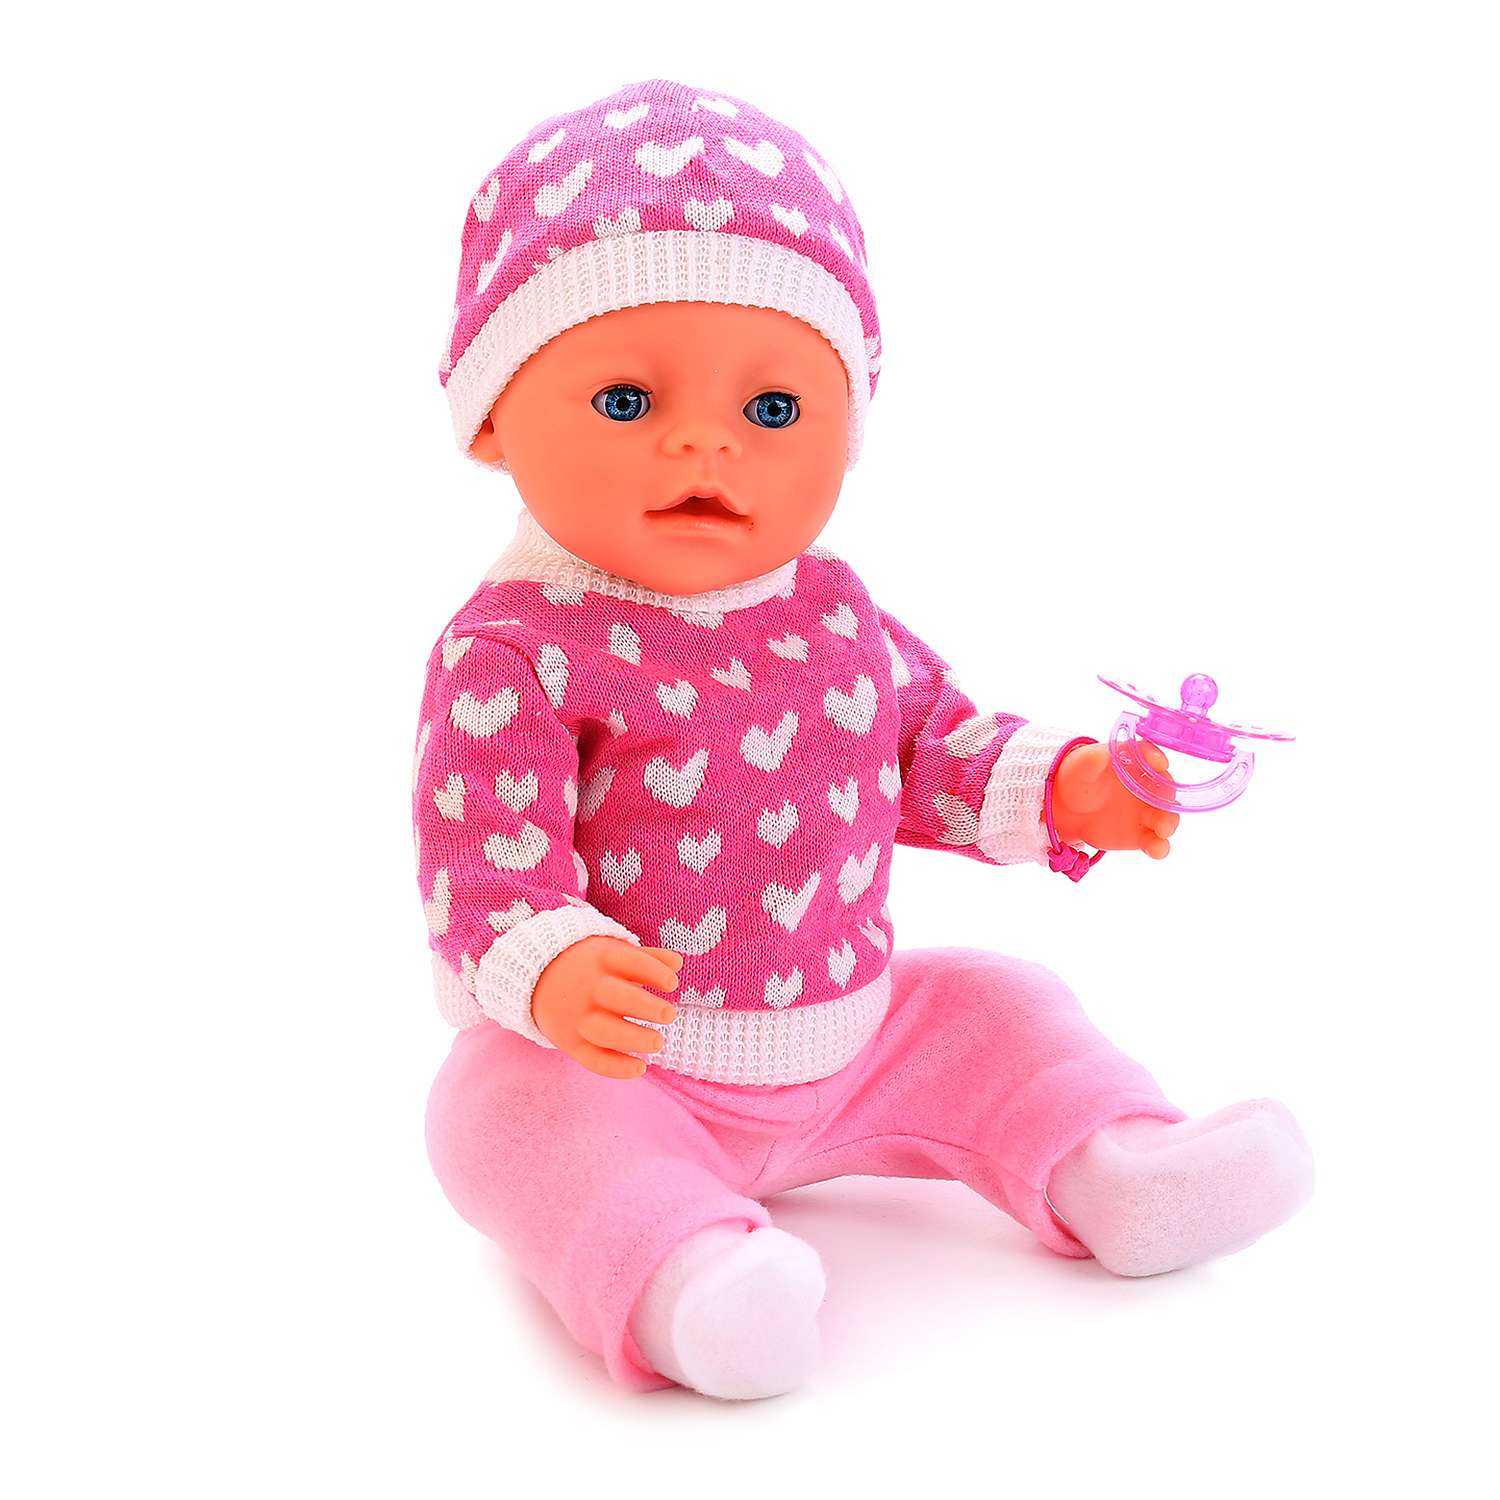 Кукла Карапуз интерактивная 3 функции в розовой кофточке в белый горошек 232601 - фото 2